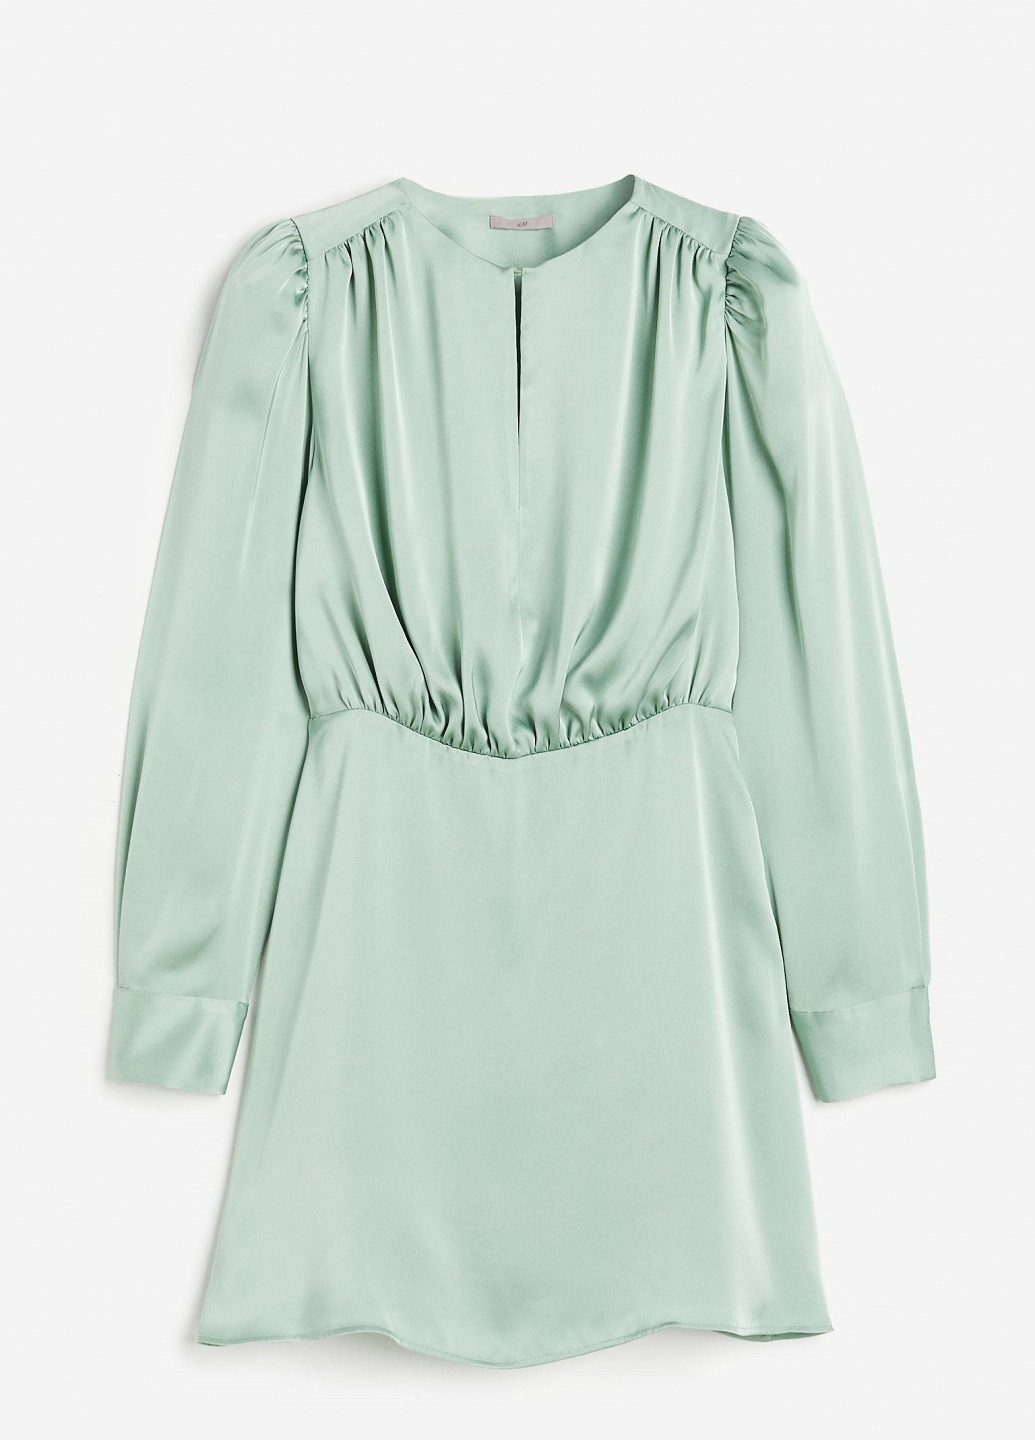 Светло-зеленое деловое платье H&M однотонное